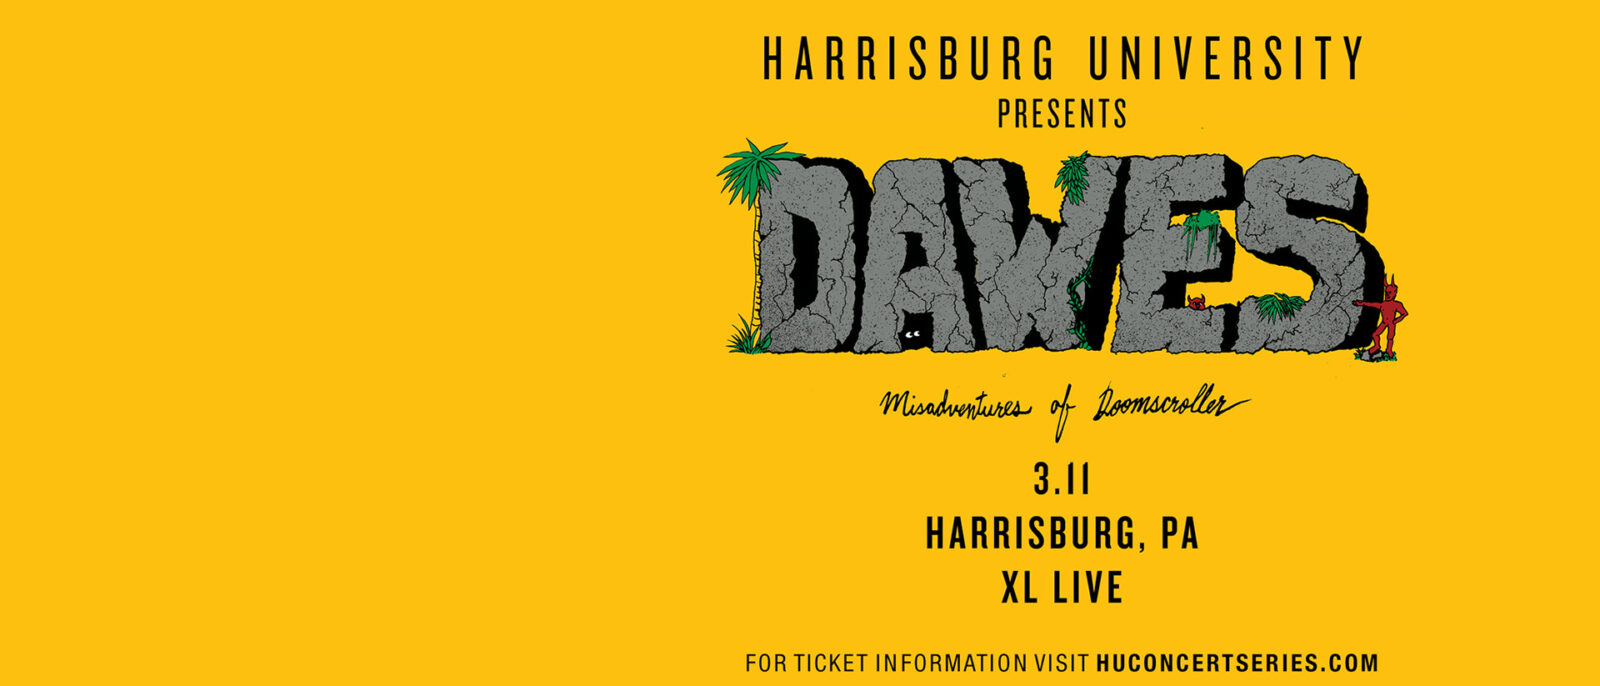 Harrisburg University Presents welcomes back Dawes in Concert